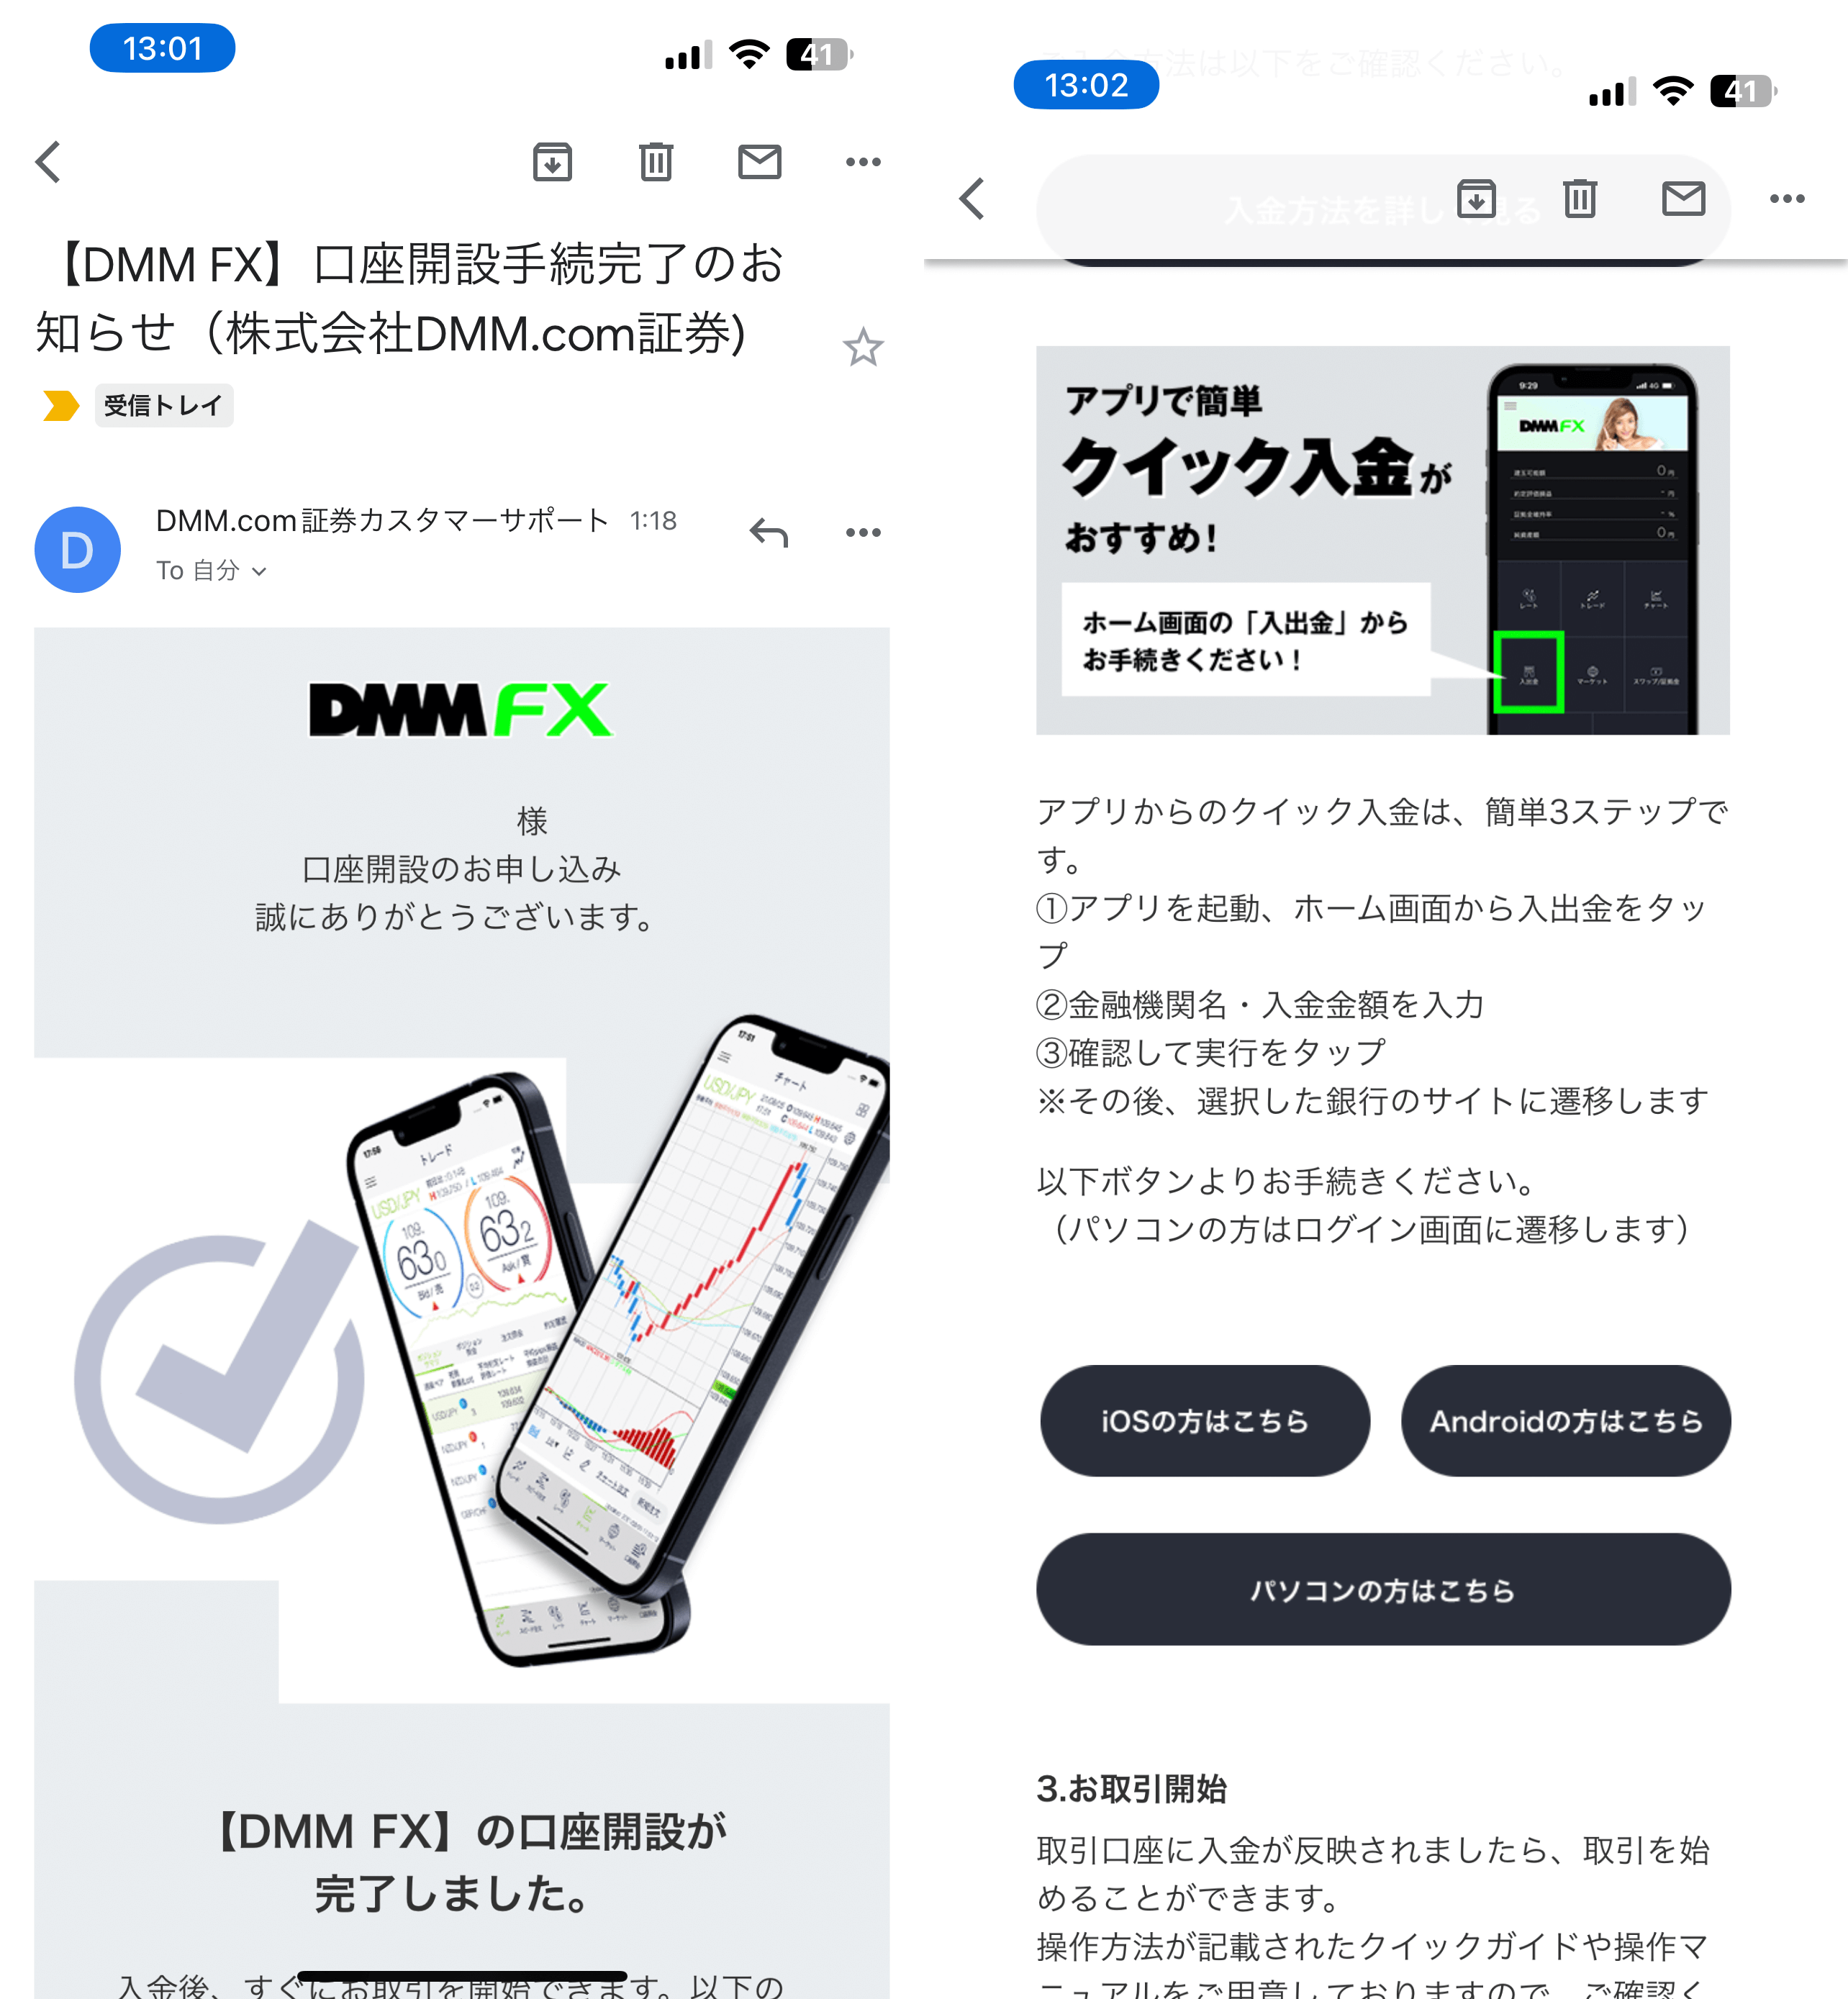 【DMM FX】口座開設手続完了のお知らせ